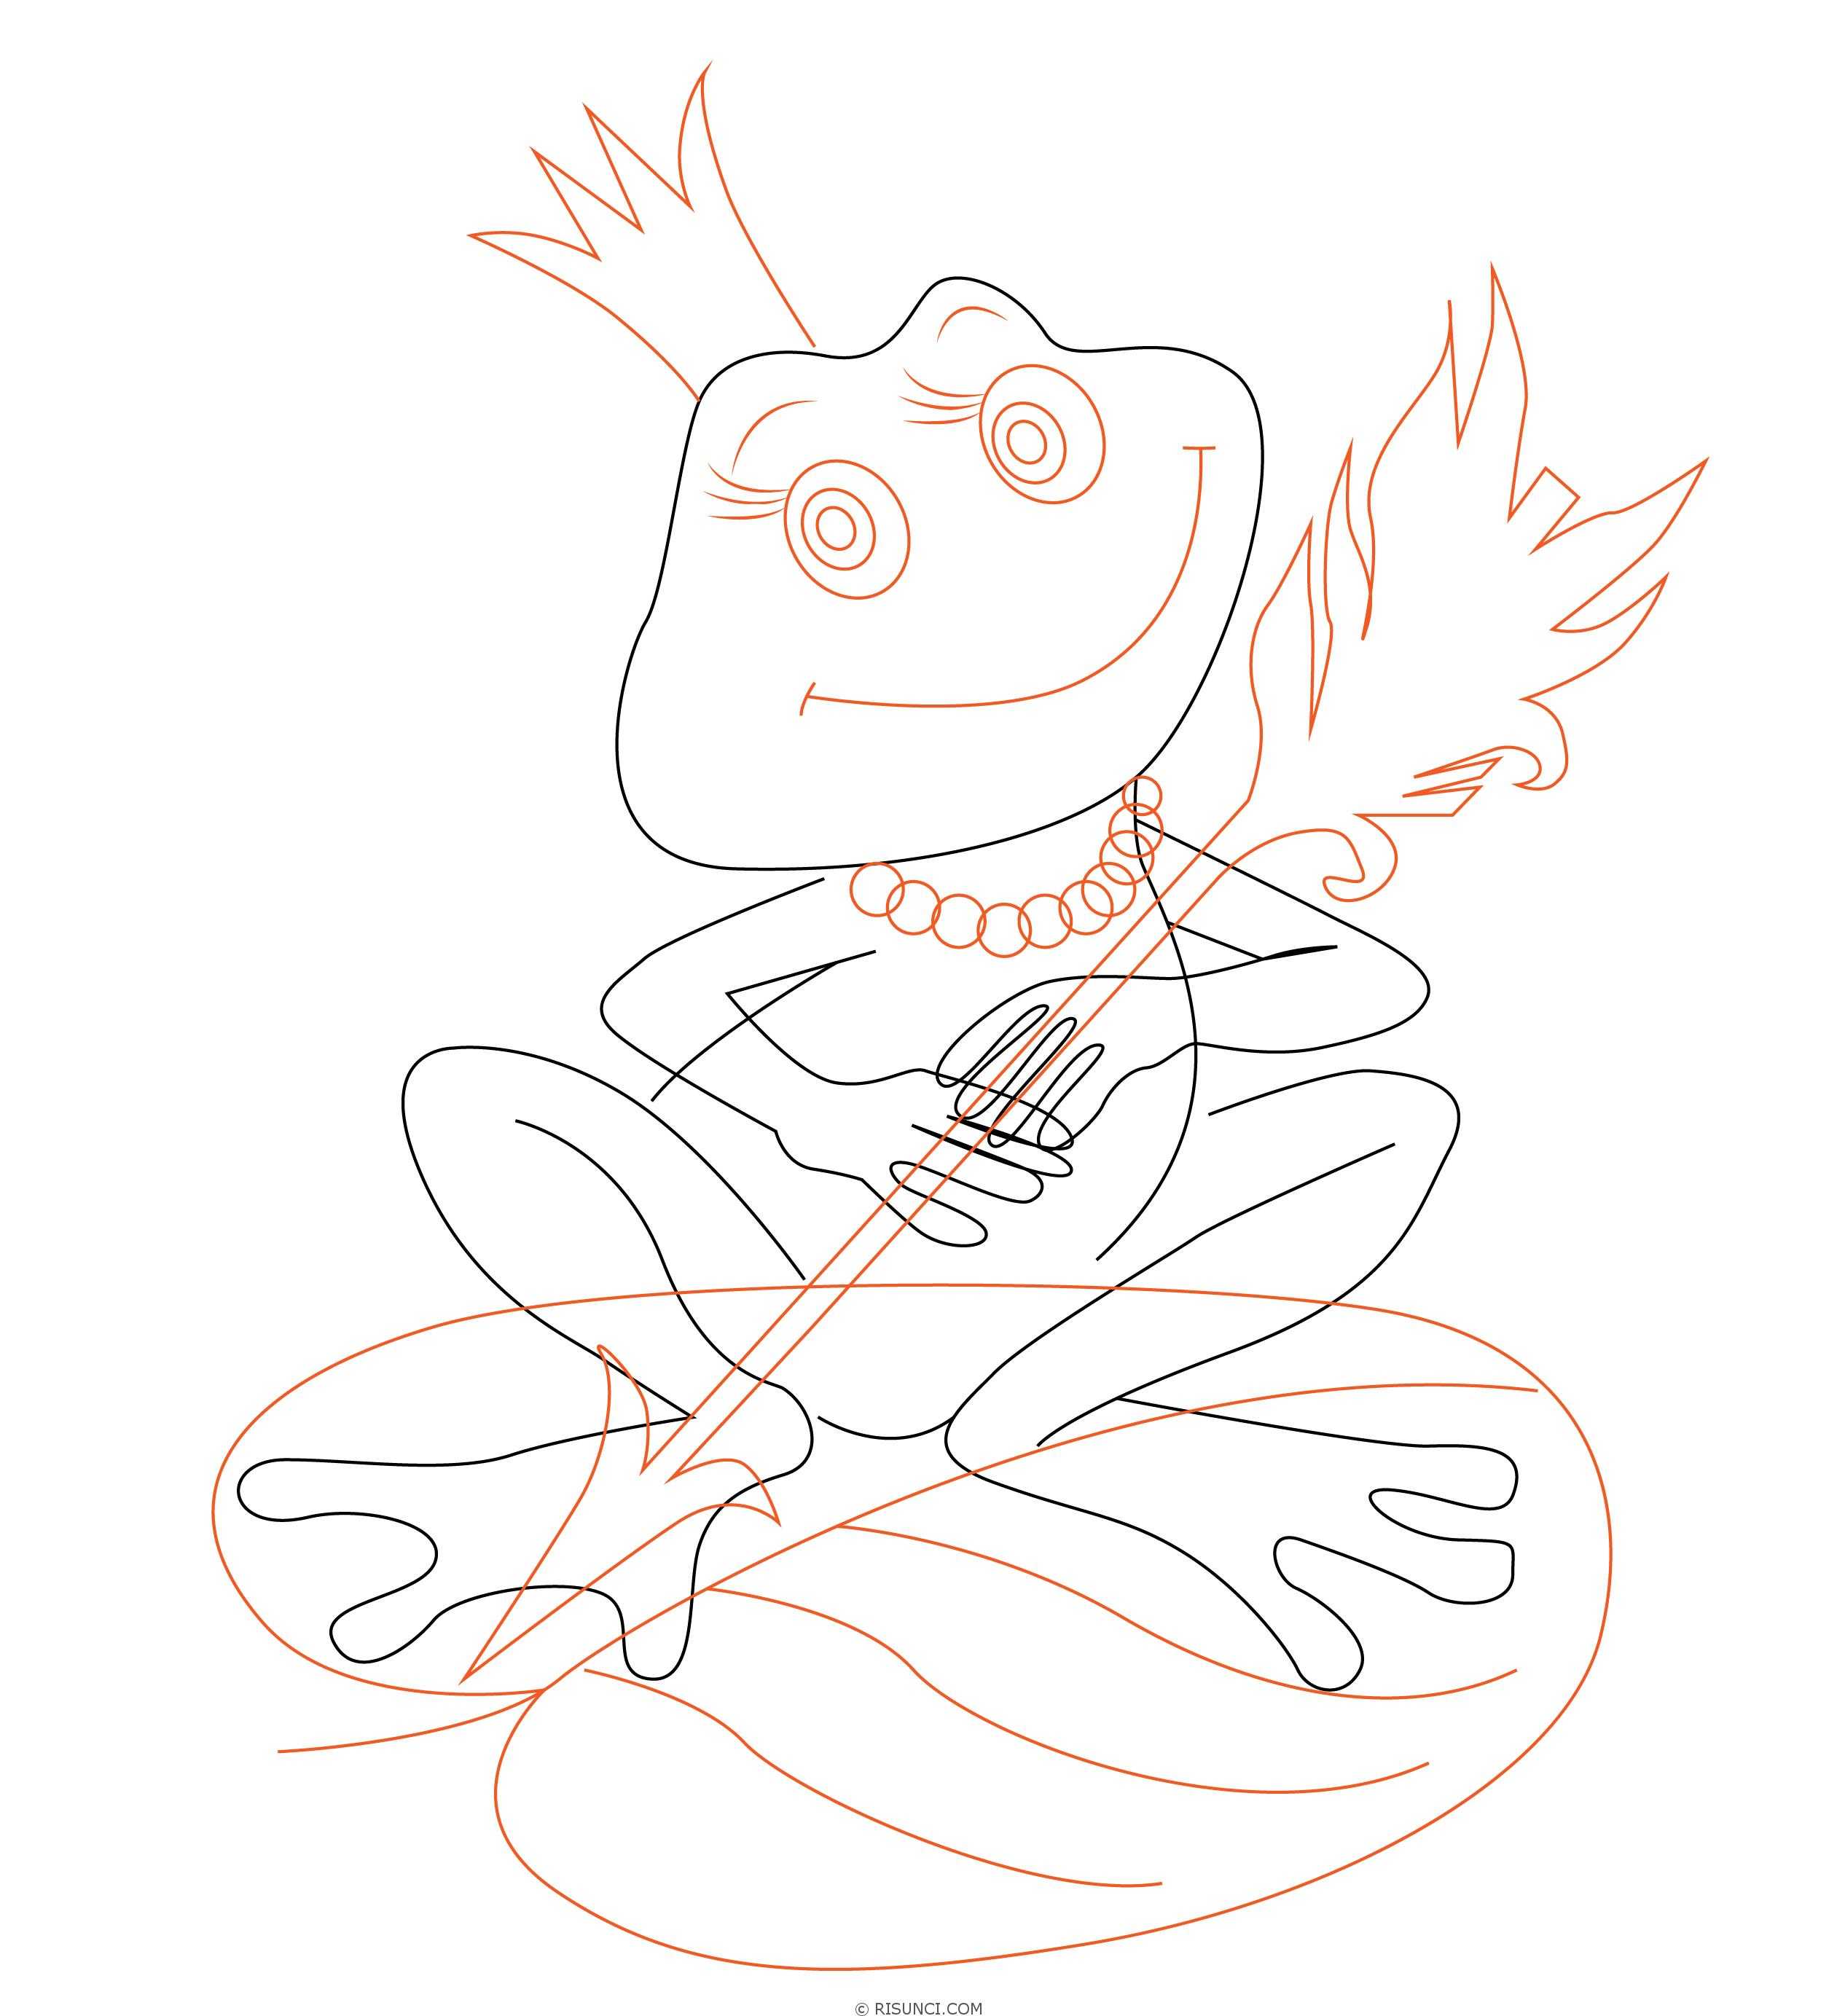 Ковер из сказки царевна лягушка рисунок карандашом. как нарисовать ковёр из сказки царевна лягушка